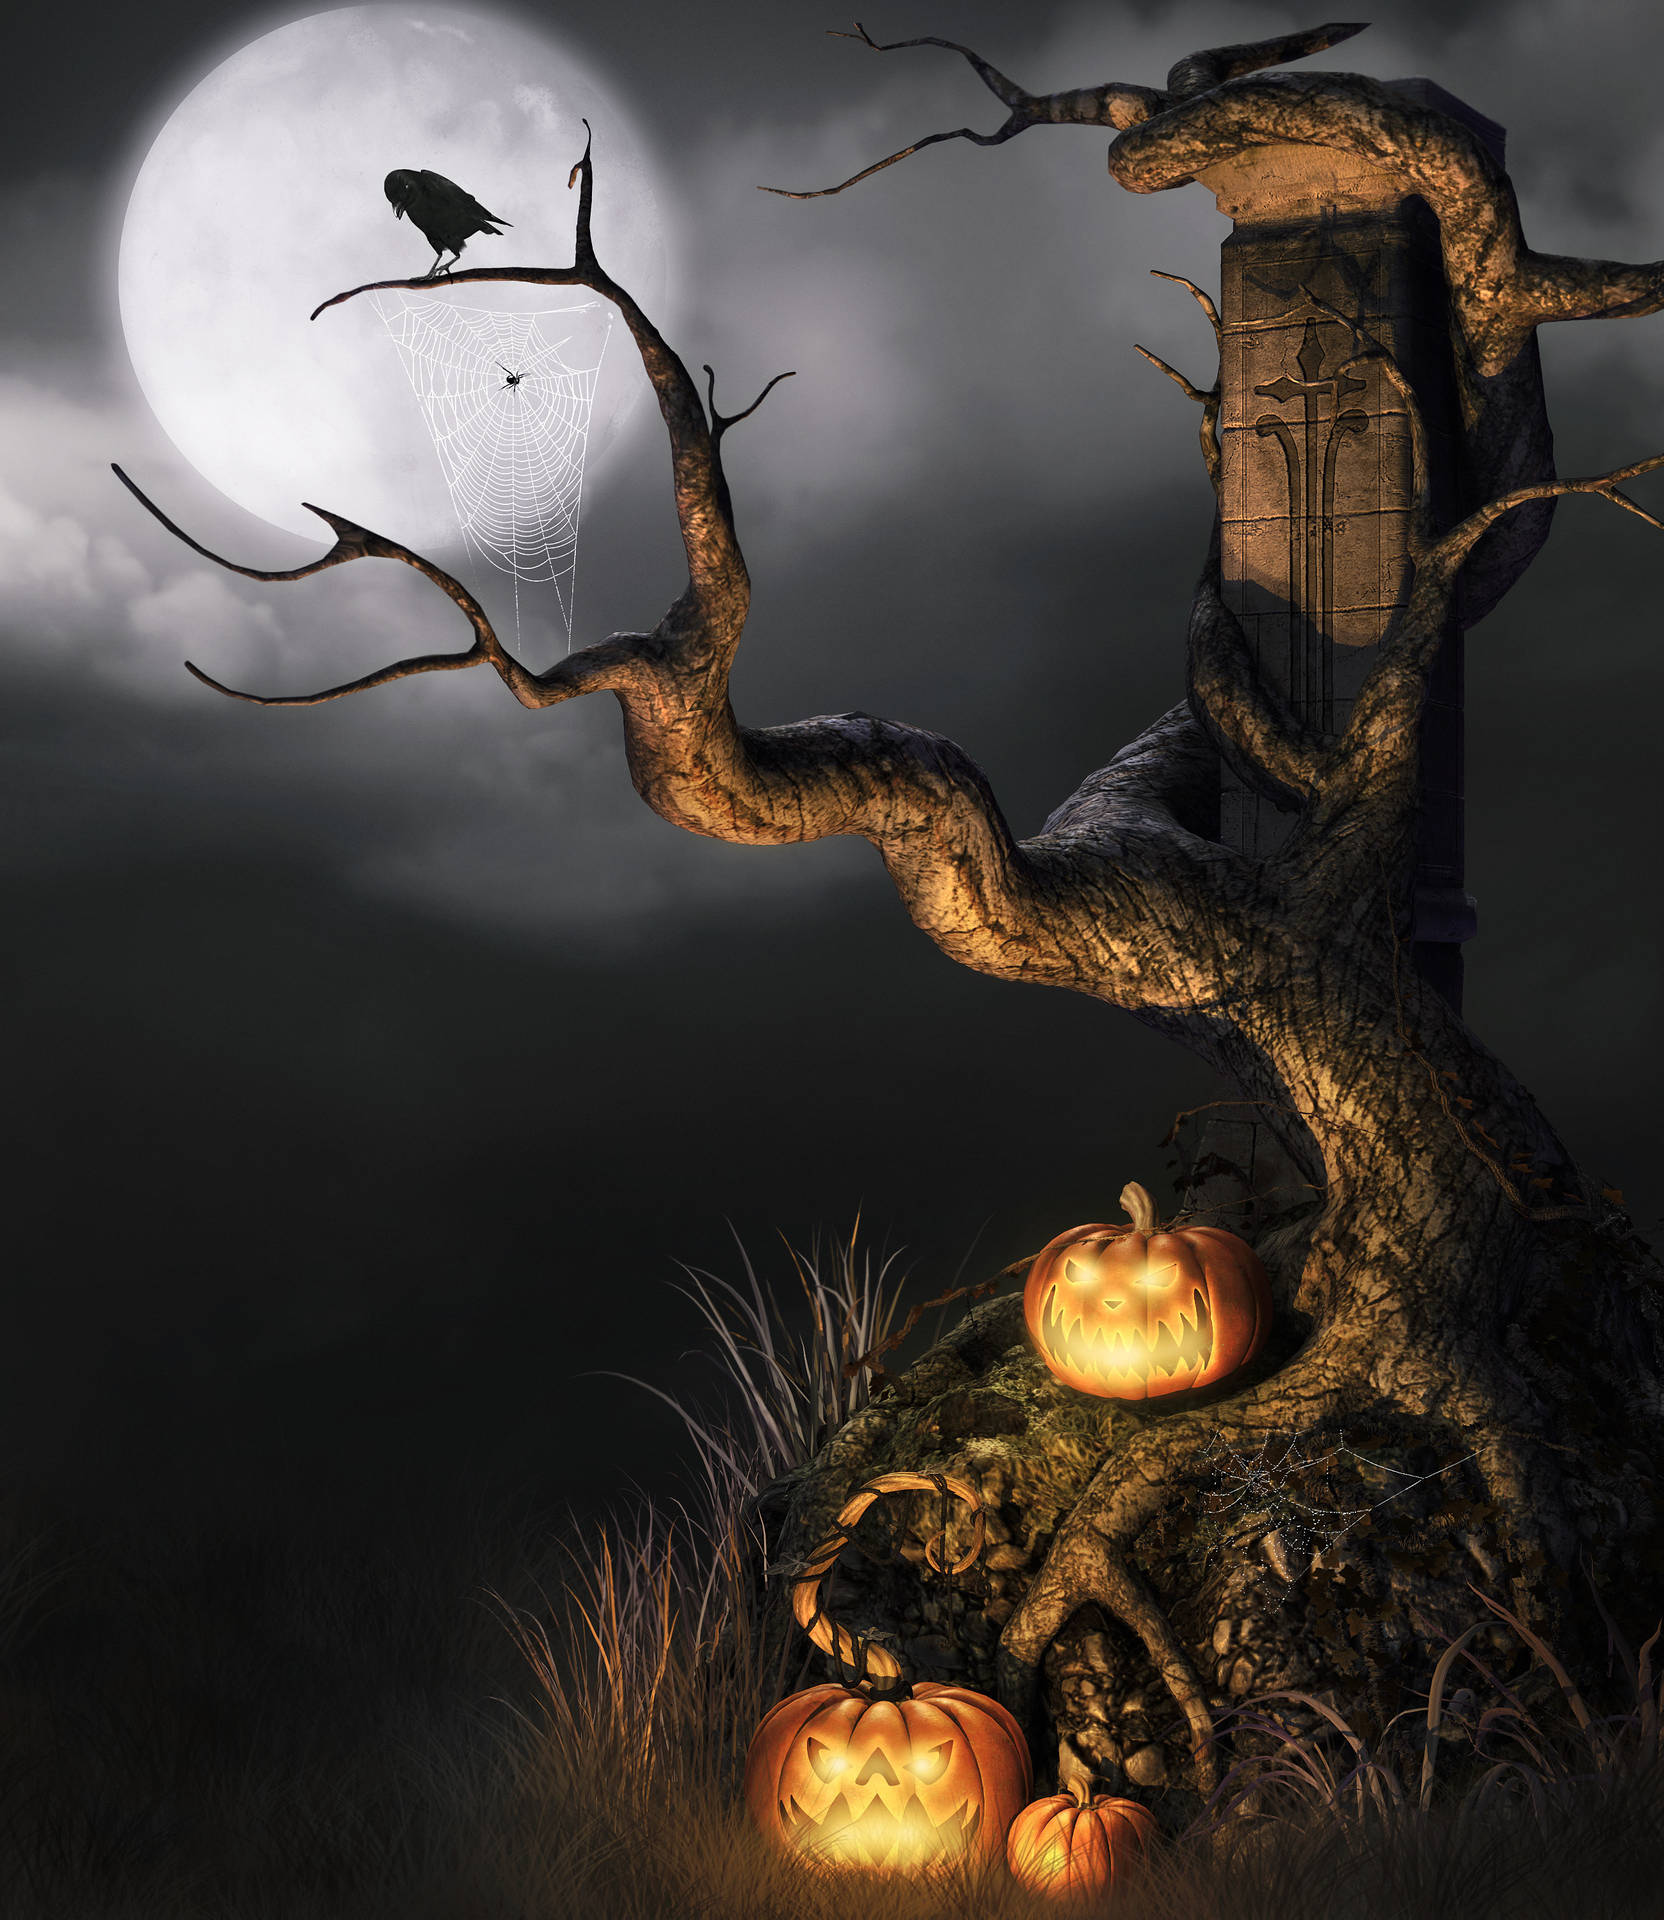 Bliredo För Den Spökliga Säsongen Med Denna Roliga Och Festliga Halloween-telefon! Wallpaper